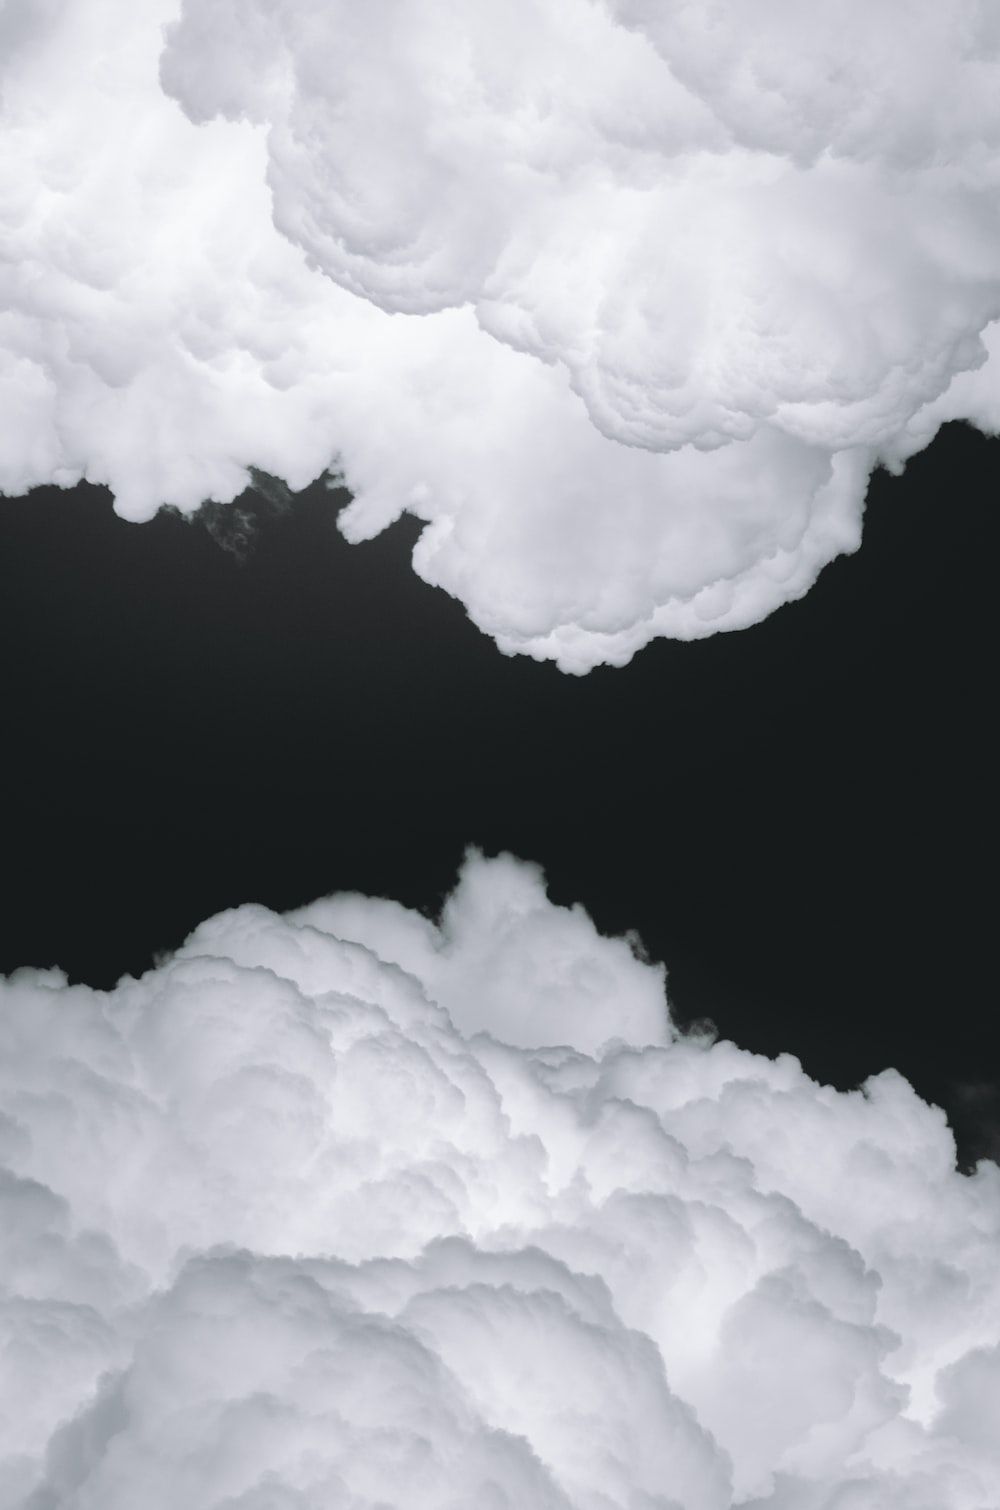  Schöne Weiß Hintergrundbild 1000x1510. Foto zum Thema Weiße wolken auf schwarzem hintergrund